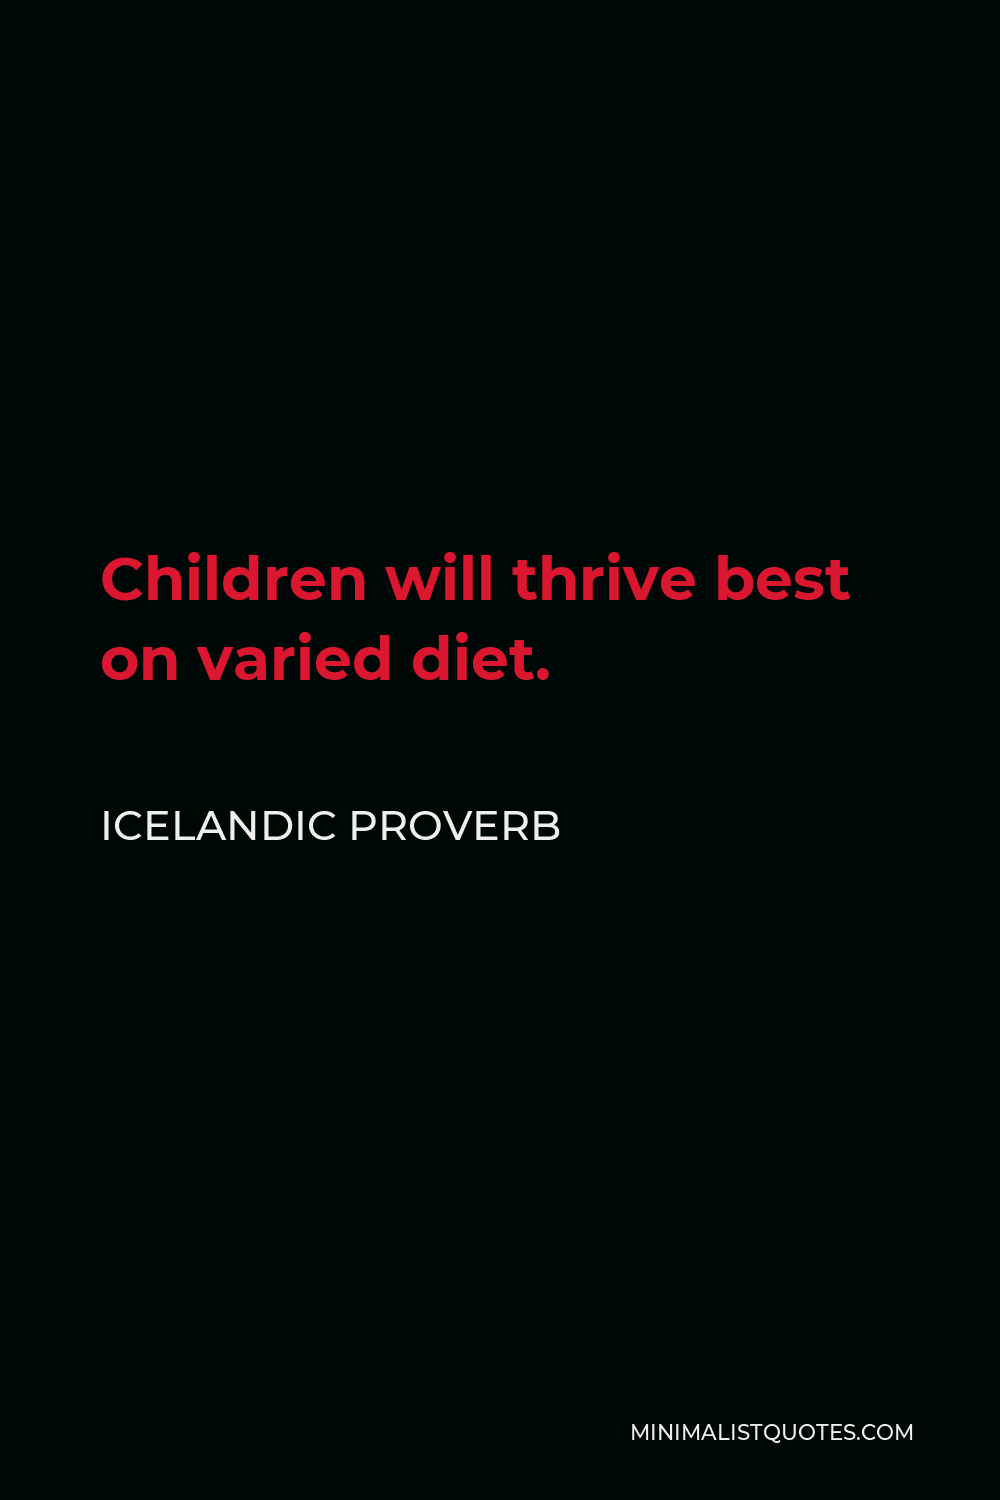 Icelandic Proverb Quote - Children will thrive best on varied diet.